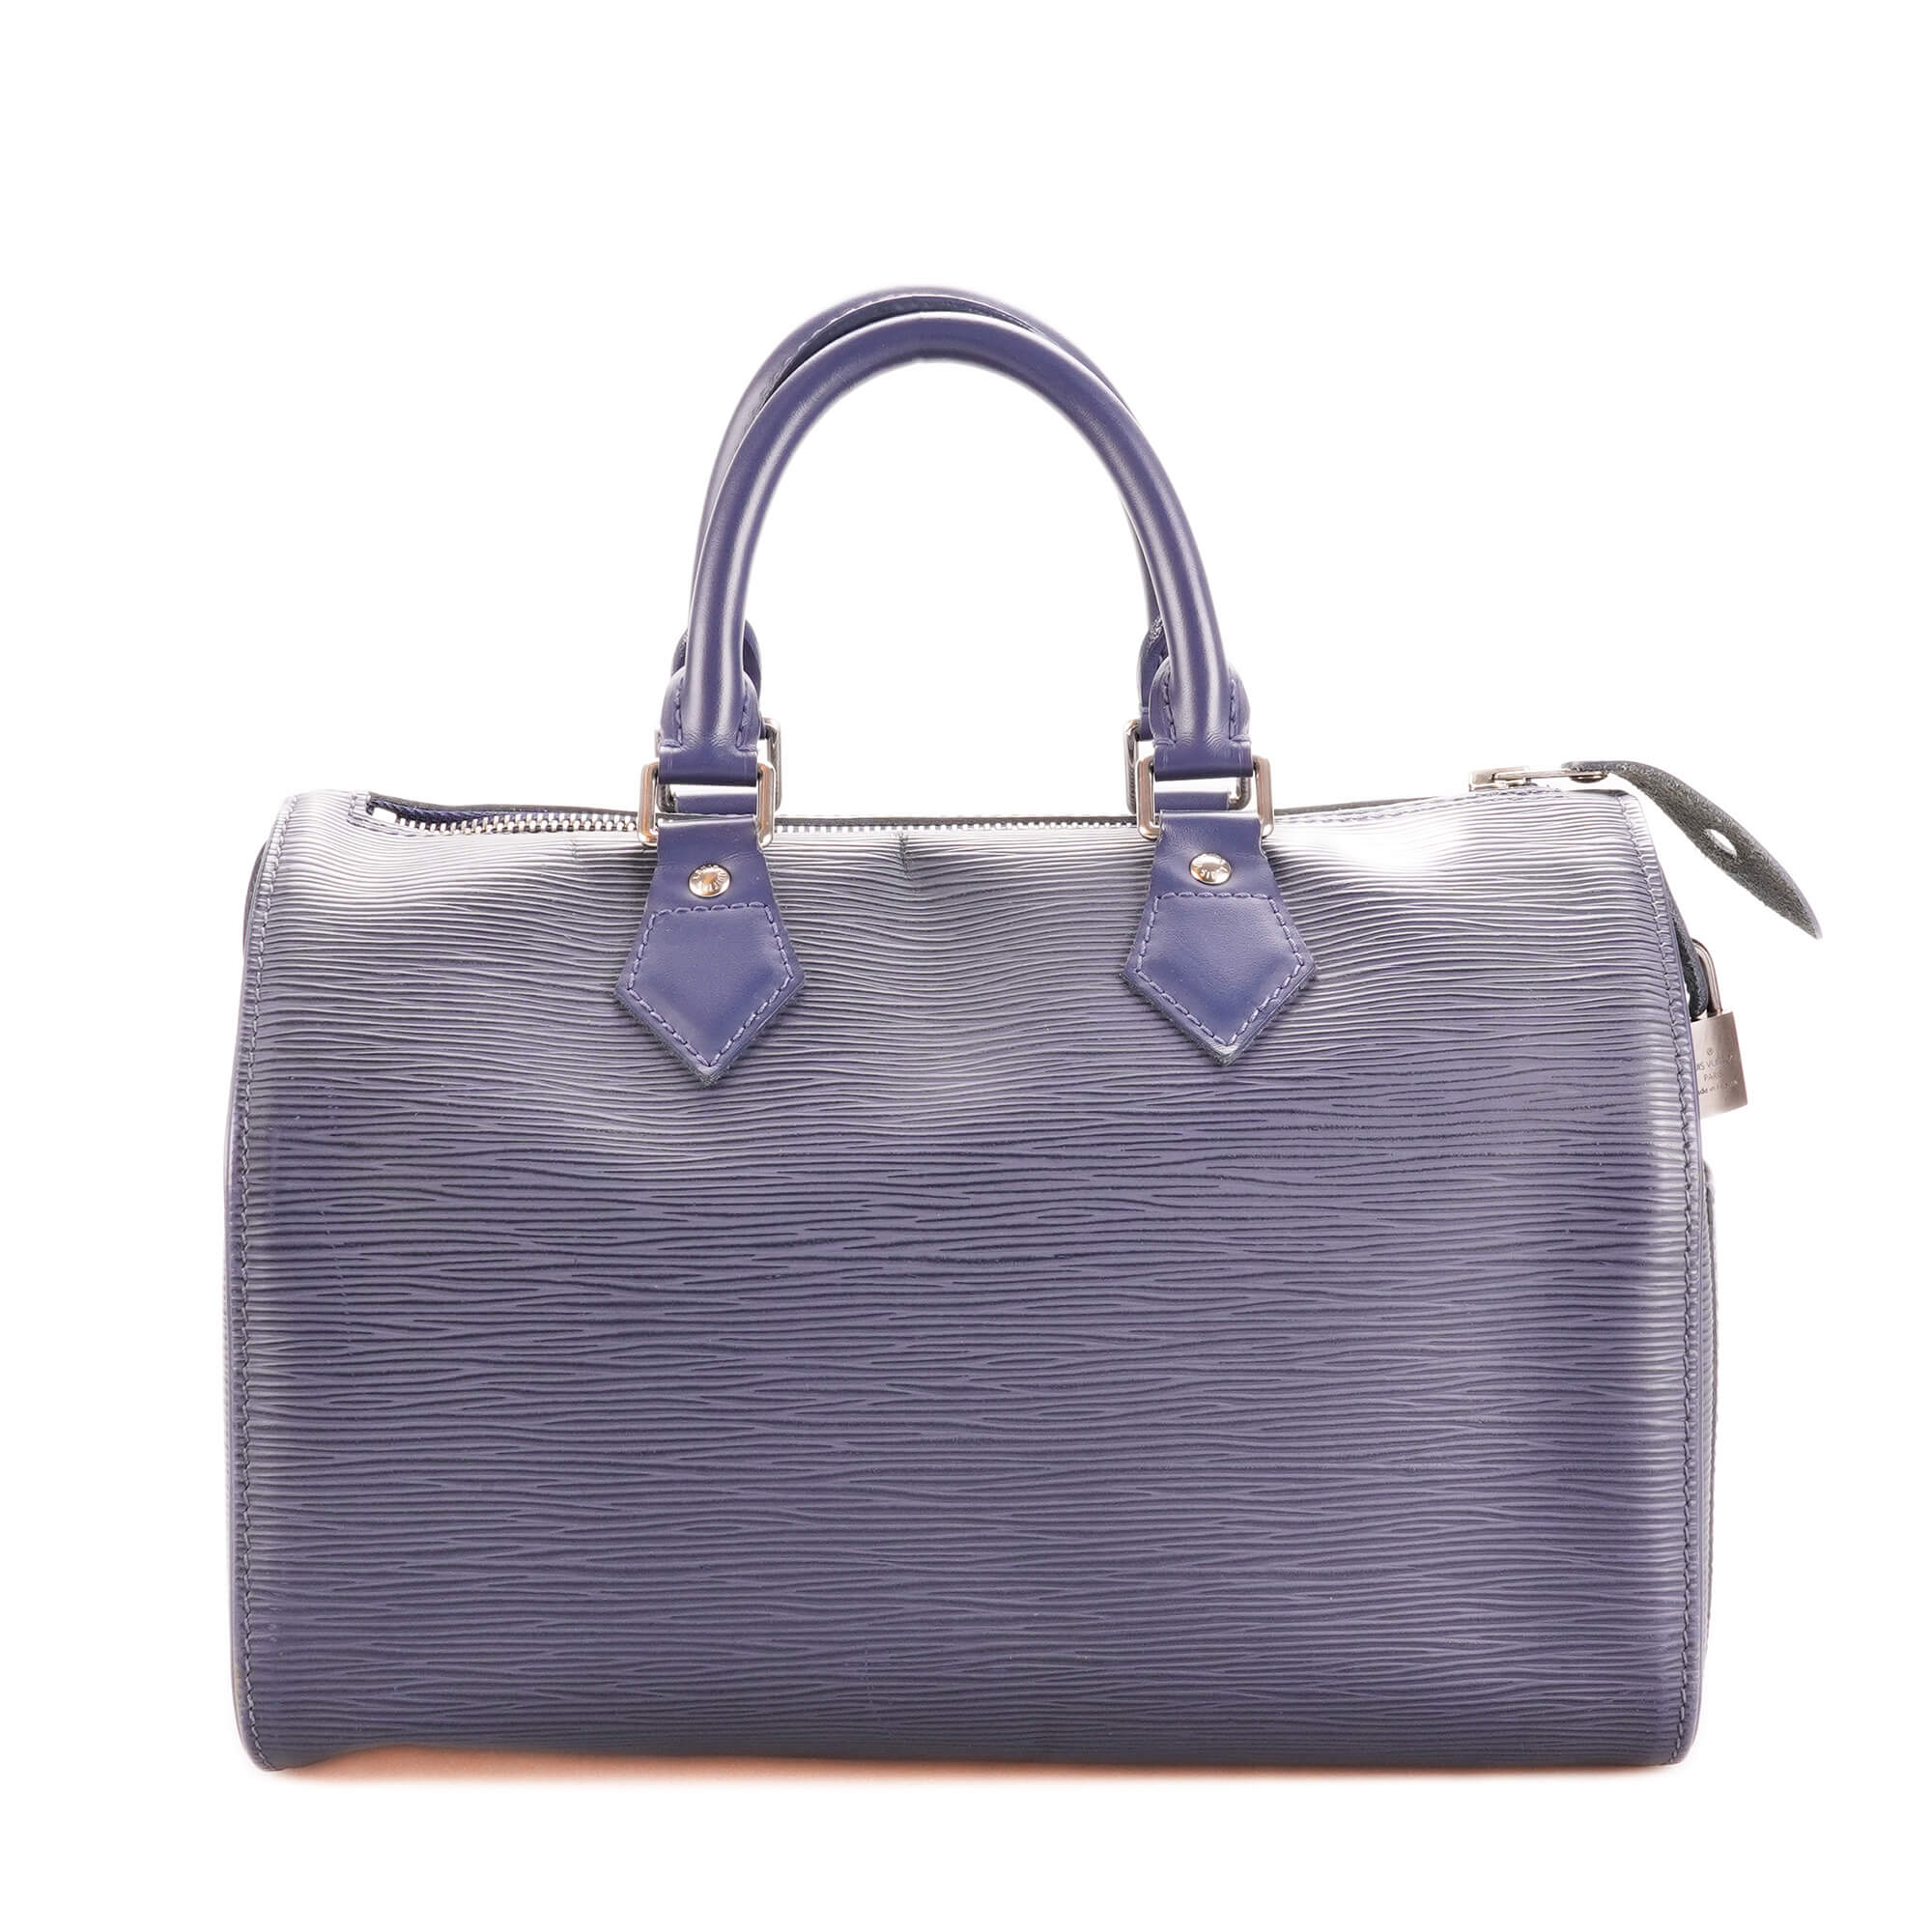 Louis Vuitton - Navy Blue Epi Leather Speedy 25 Bag 